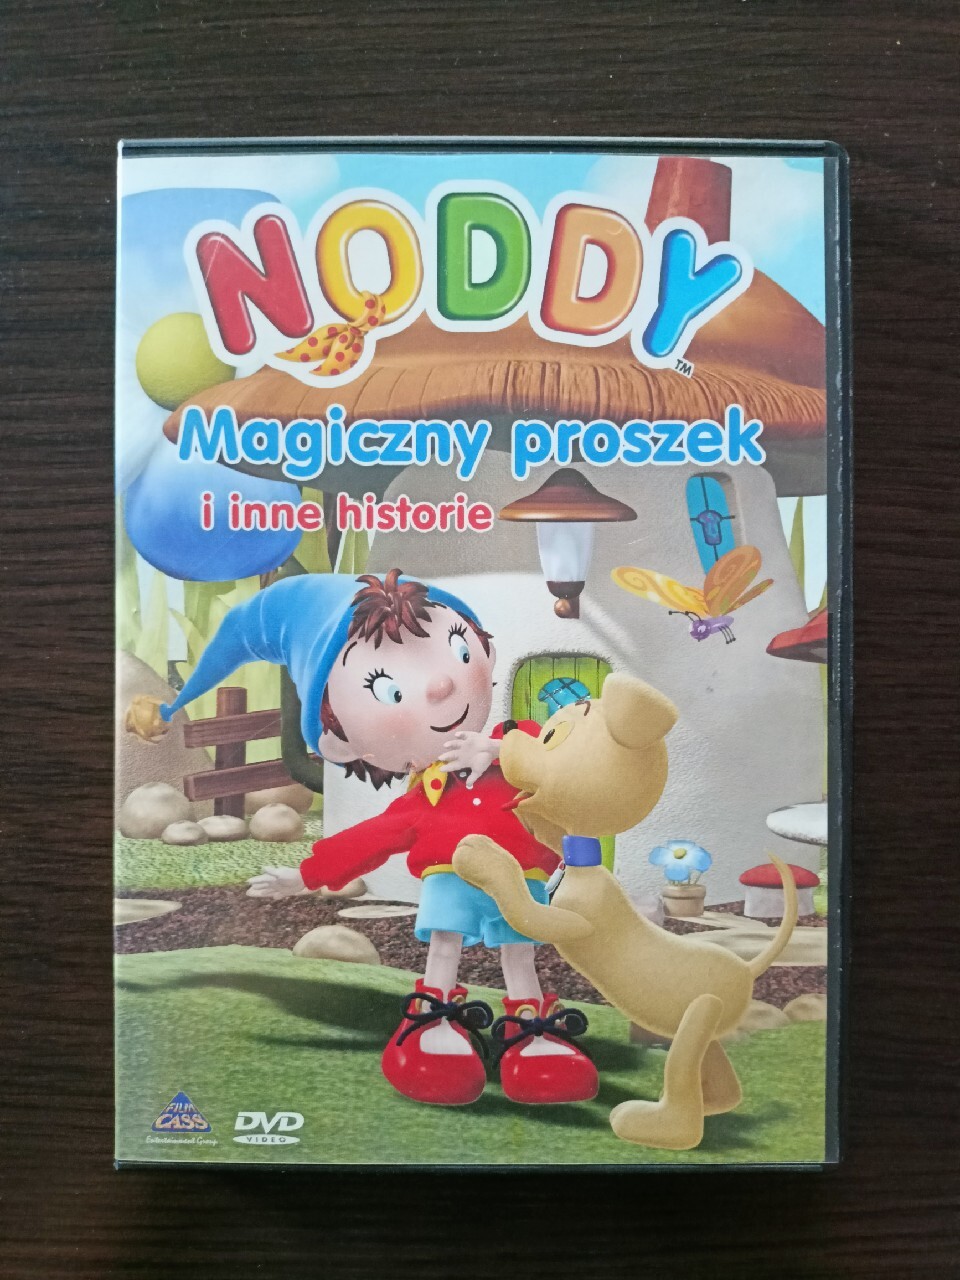 Noddy: Magiczny proszek - Bajka DVD | Września | Kup teraz na Allegro ...